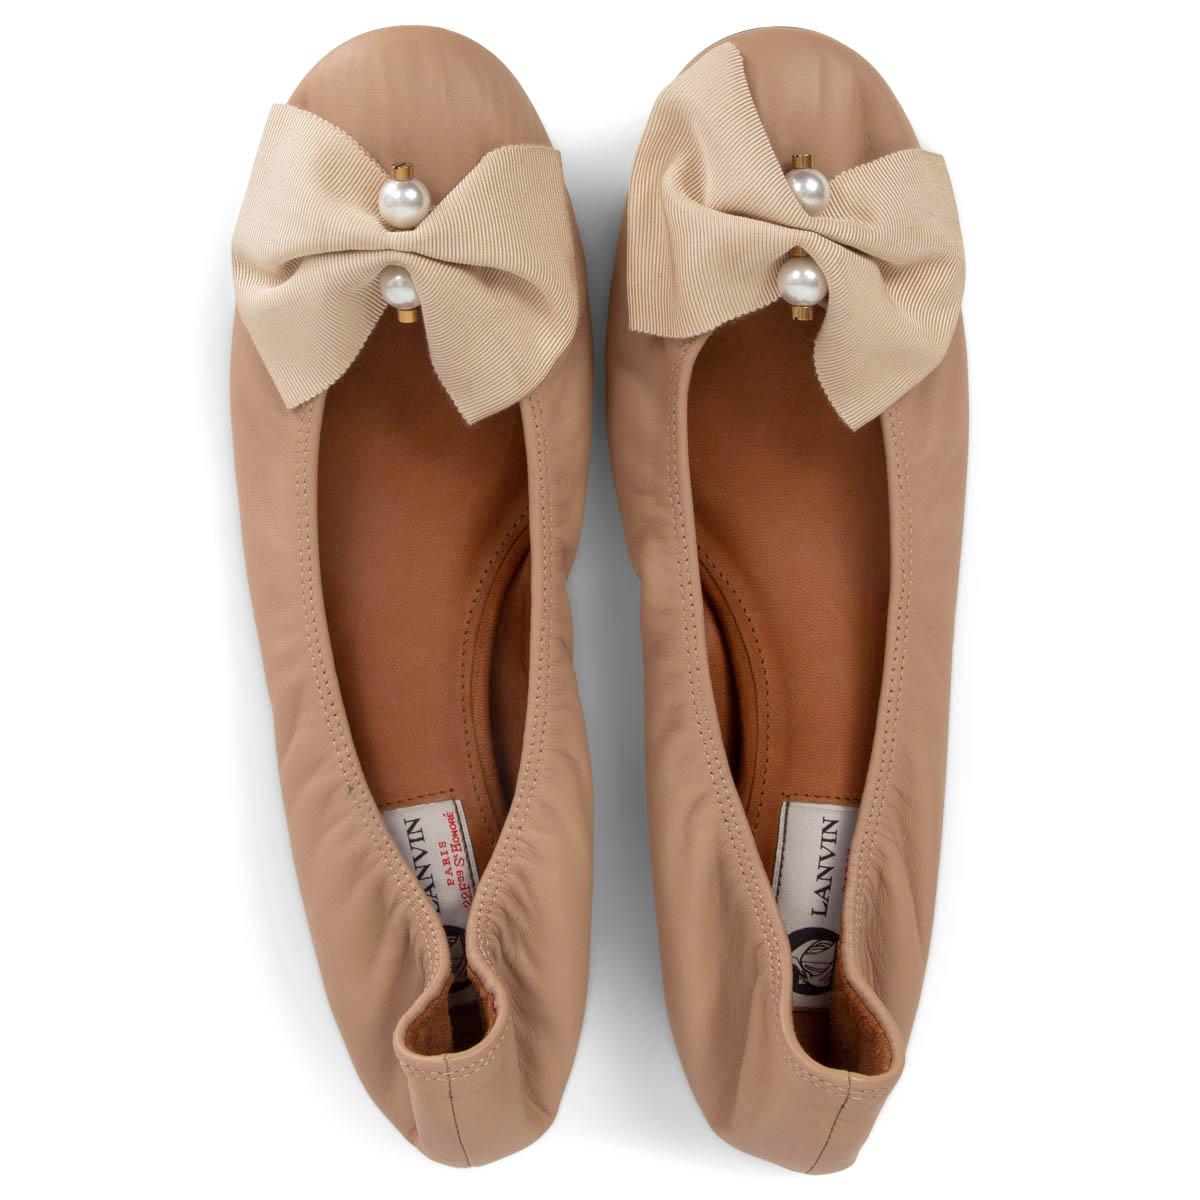 lanvin ballet shoes